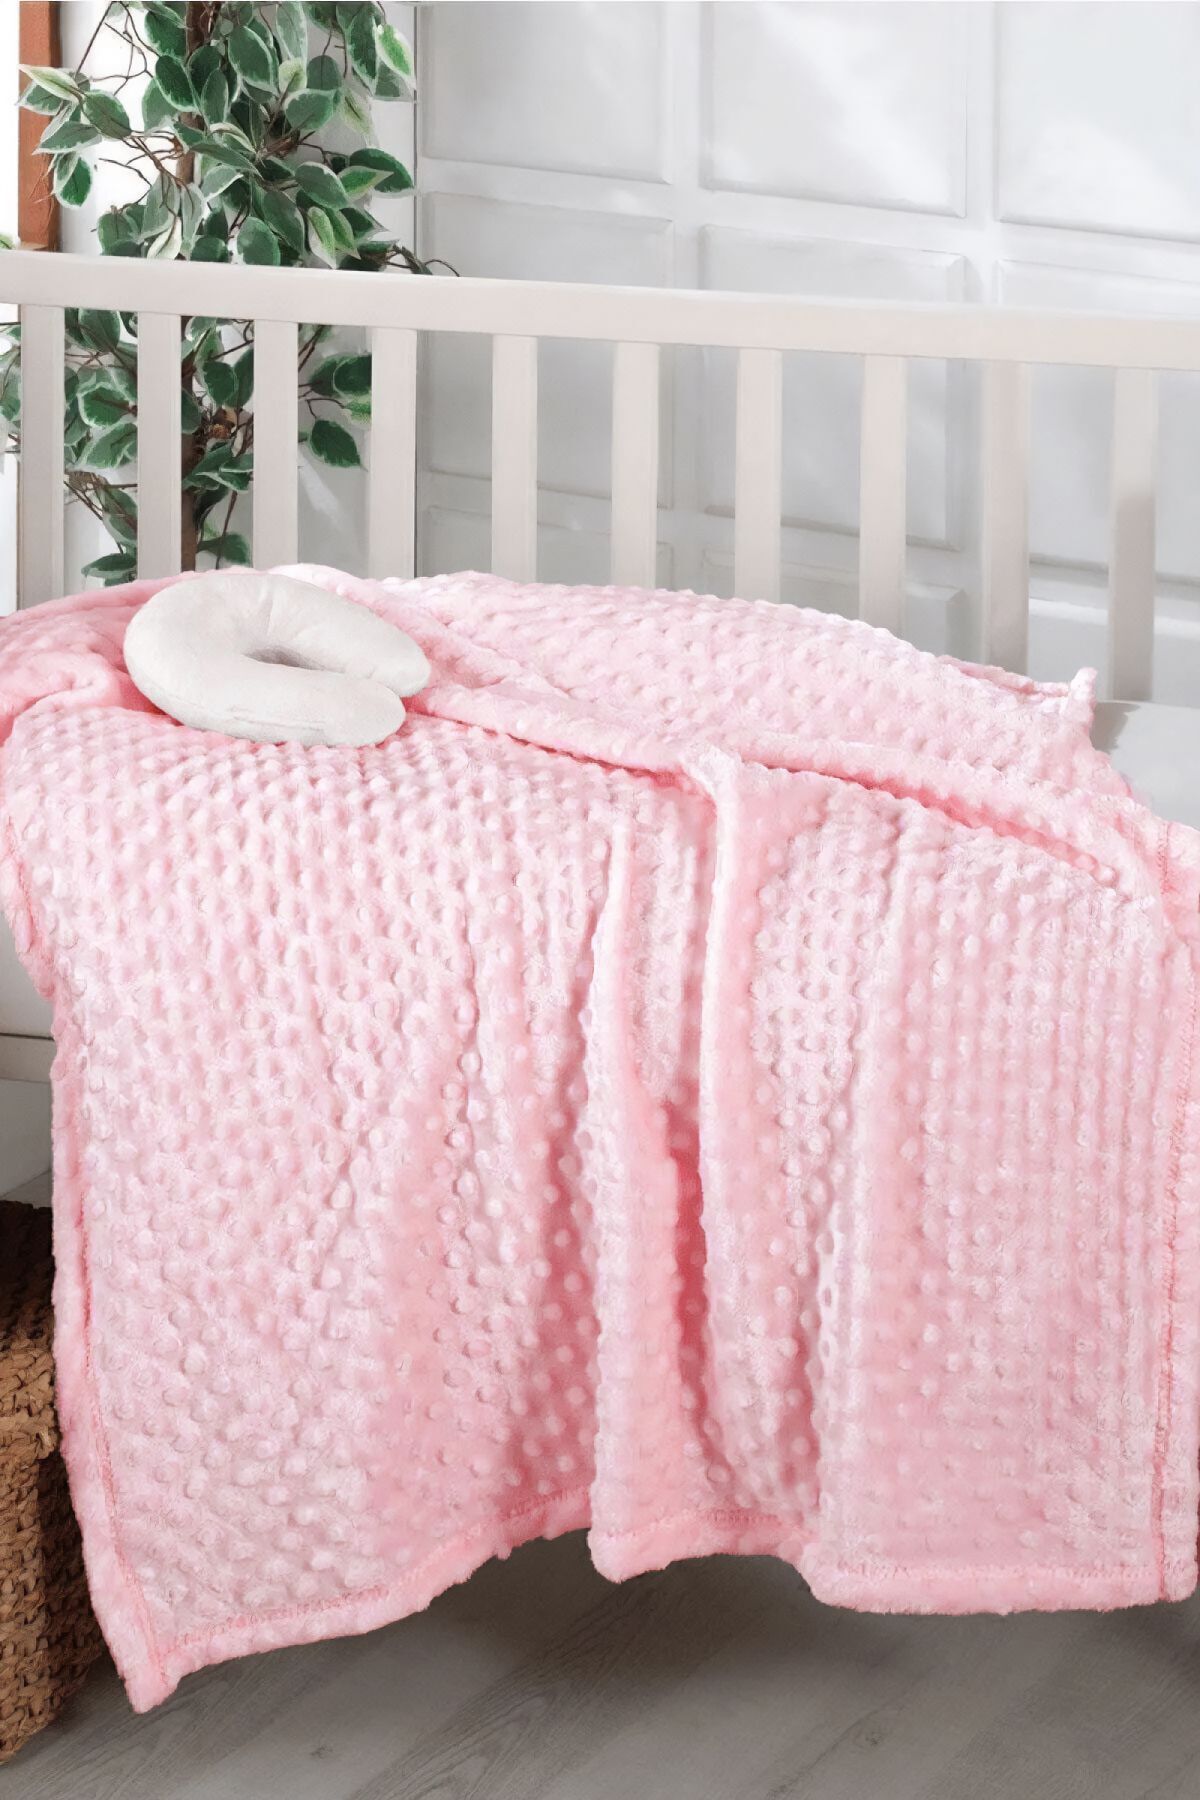 AKSU İpeksoft Tomurcuk Boyunluk Hediyeli Bebek Battaniyesi - Pembe